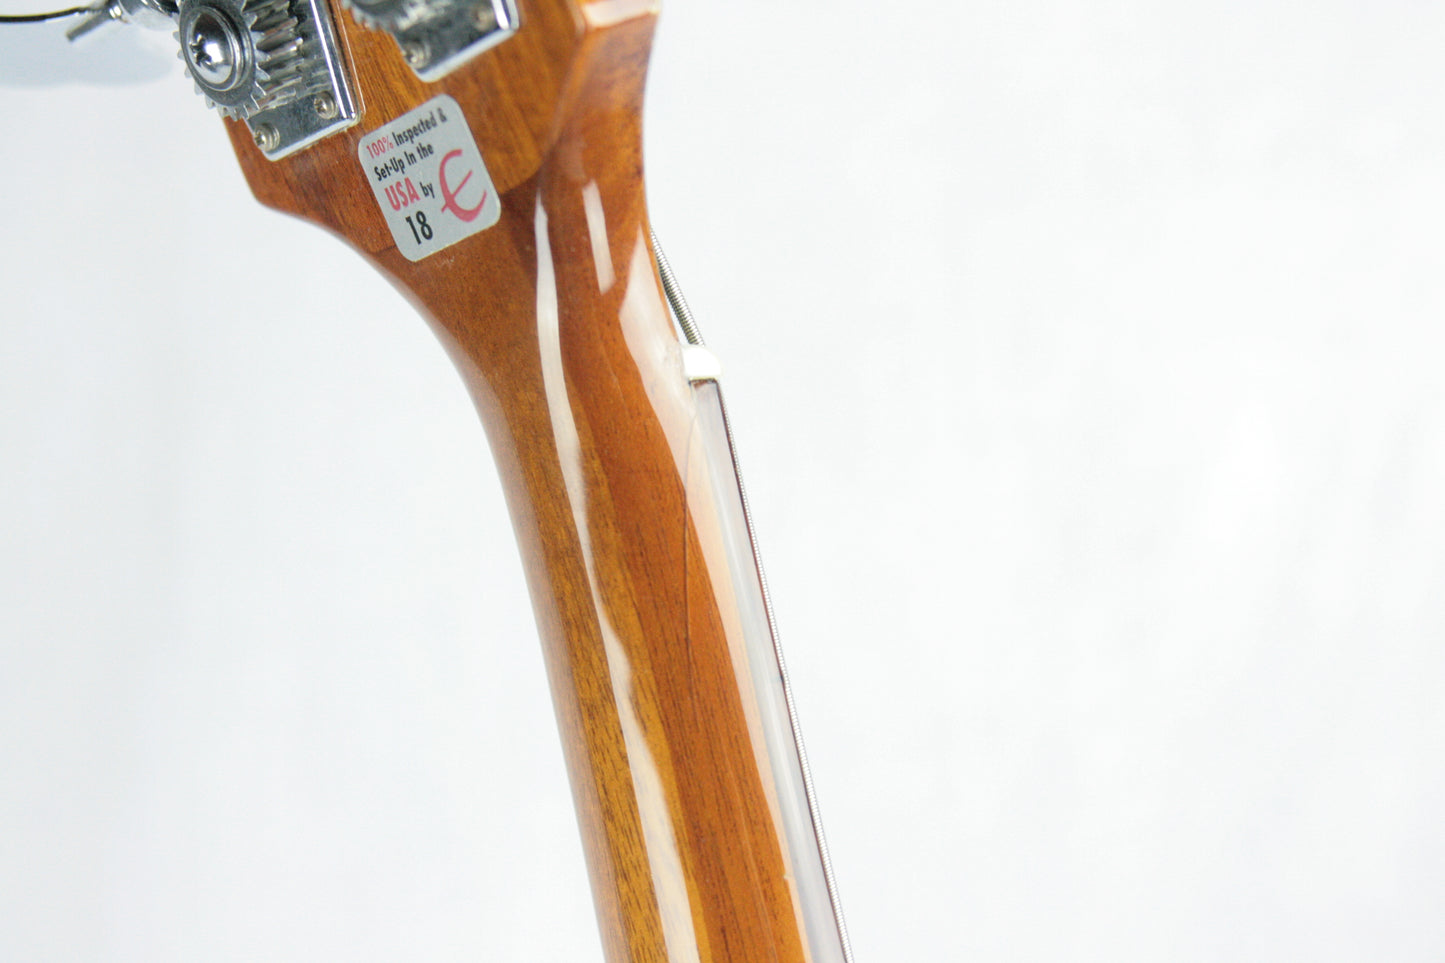 1998 Epiphone Rivoli Natural Semi Hollowbody Bass Guitar! Peerless Korea Factory EB-2